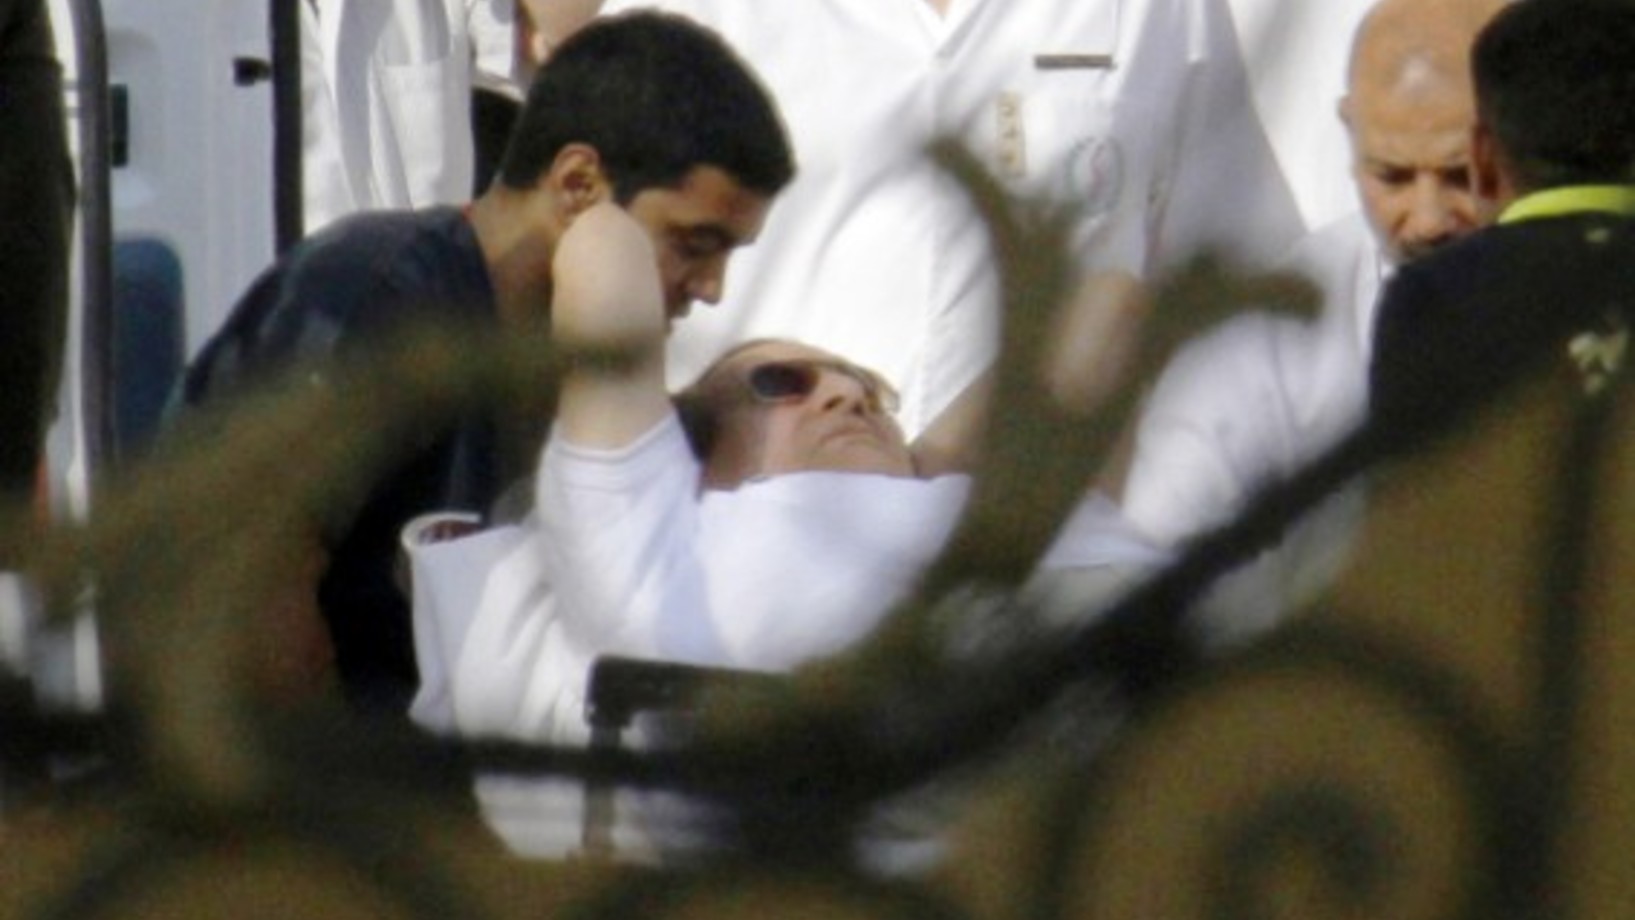 Hosni Mubarak am Donnerstag bei der Entlassung aus der Haft. Er wird in ein Spital überführt und steht dort unter Hausarrest. (Bild: Keystone/AP)